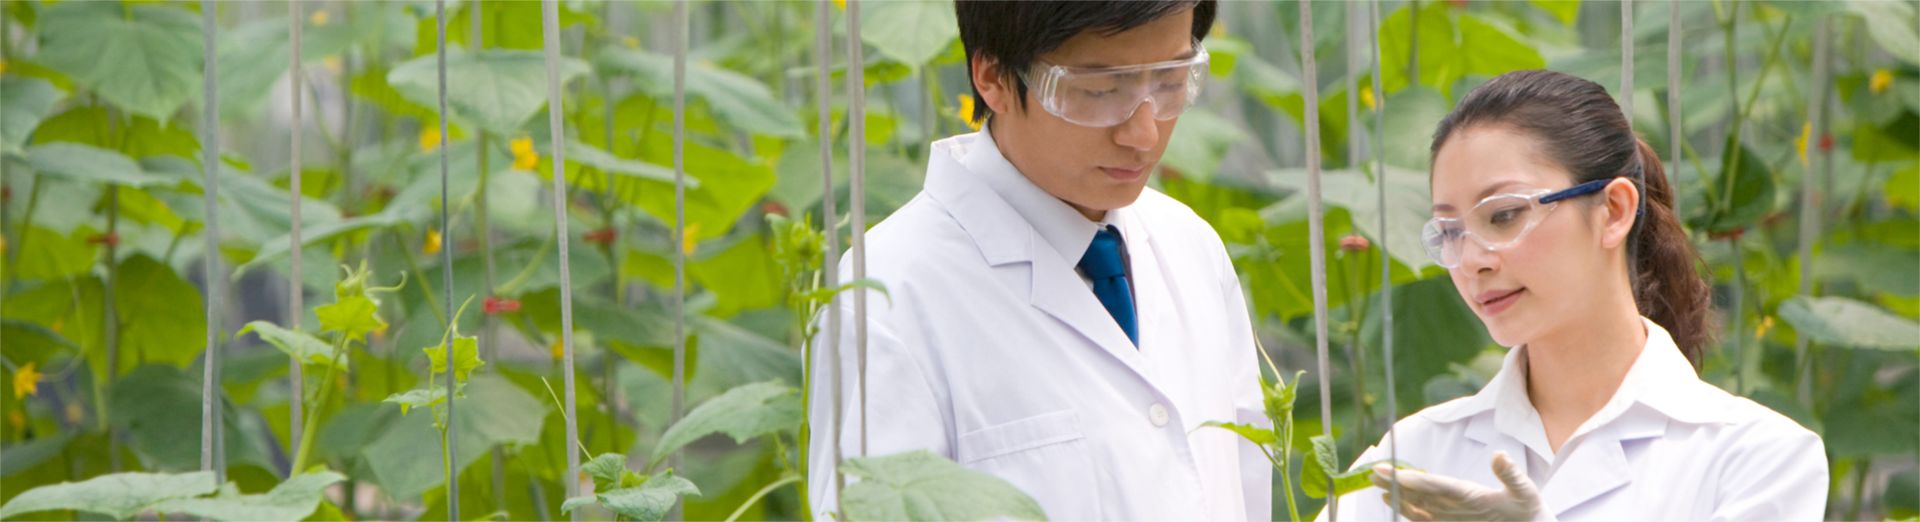 Növényeket kutató tudósok